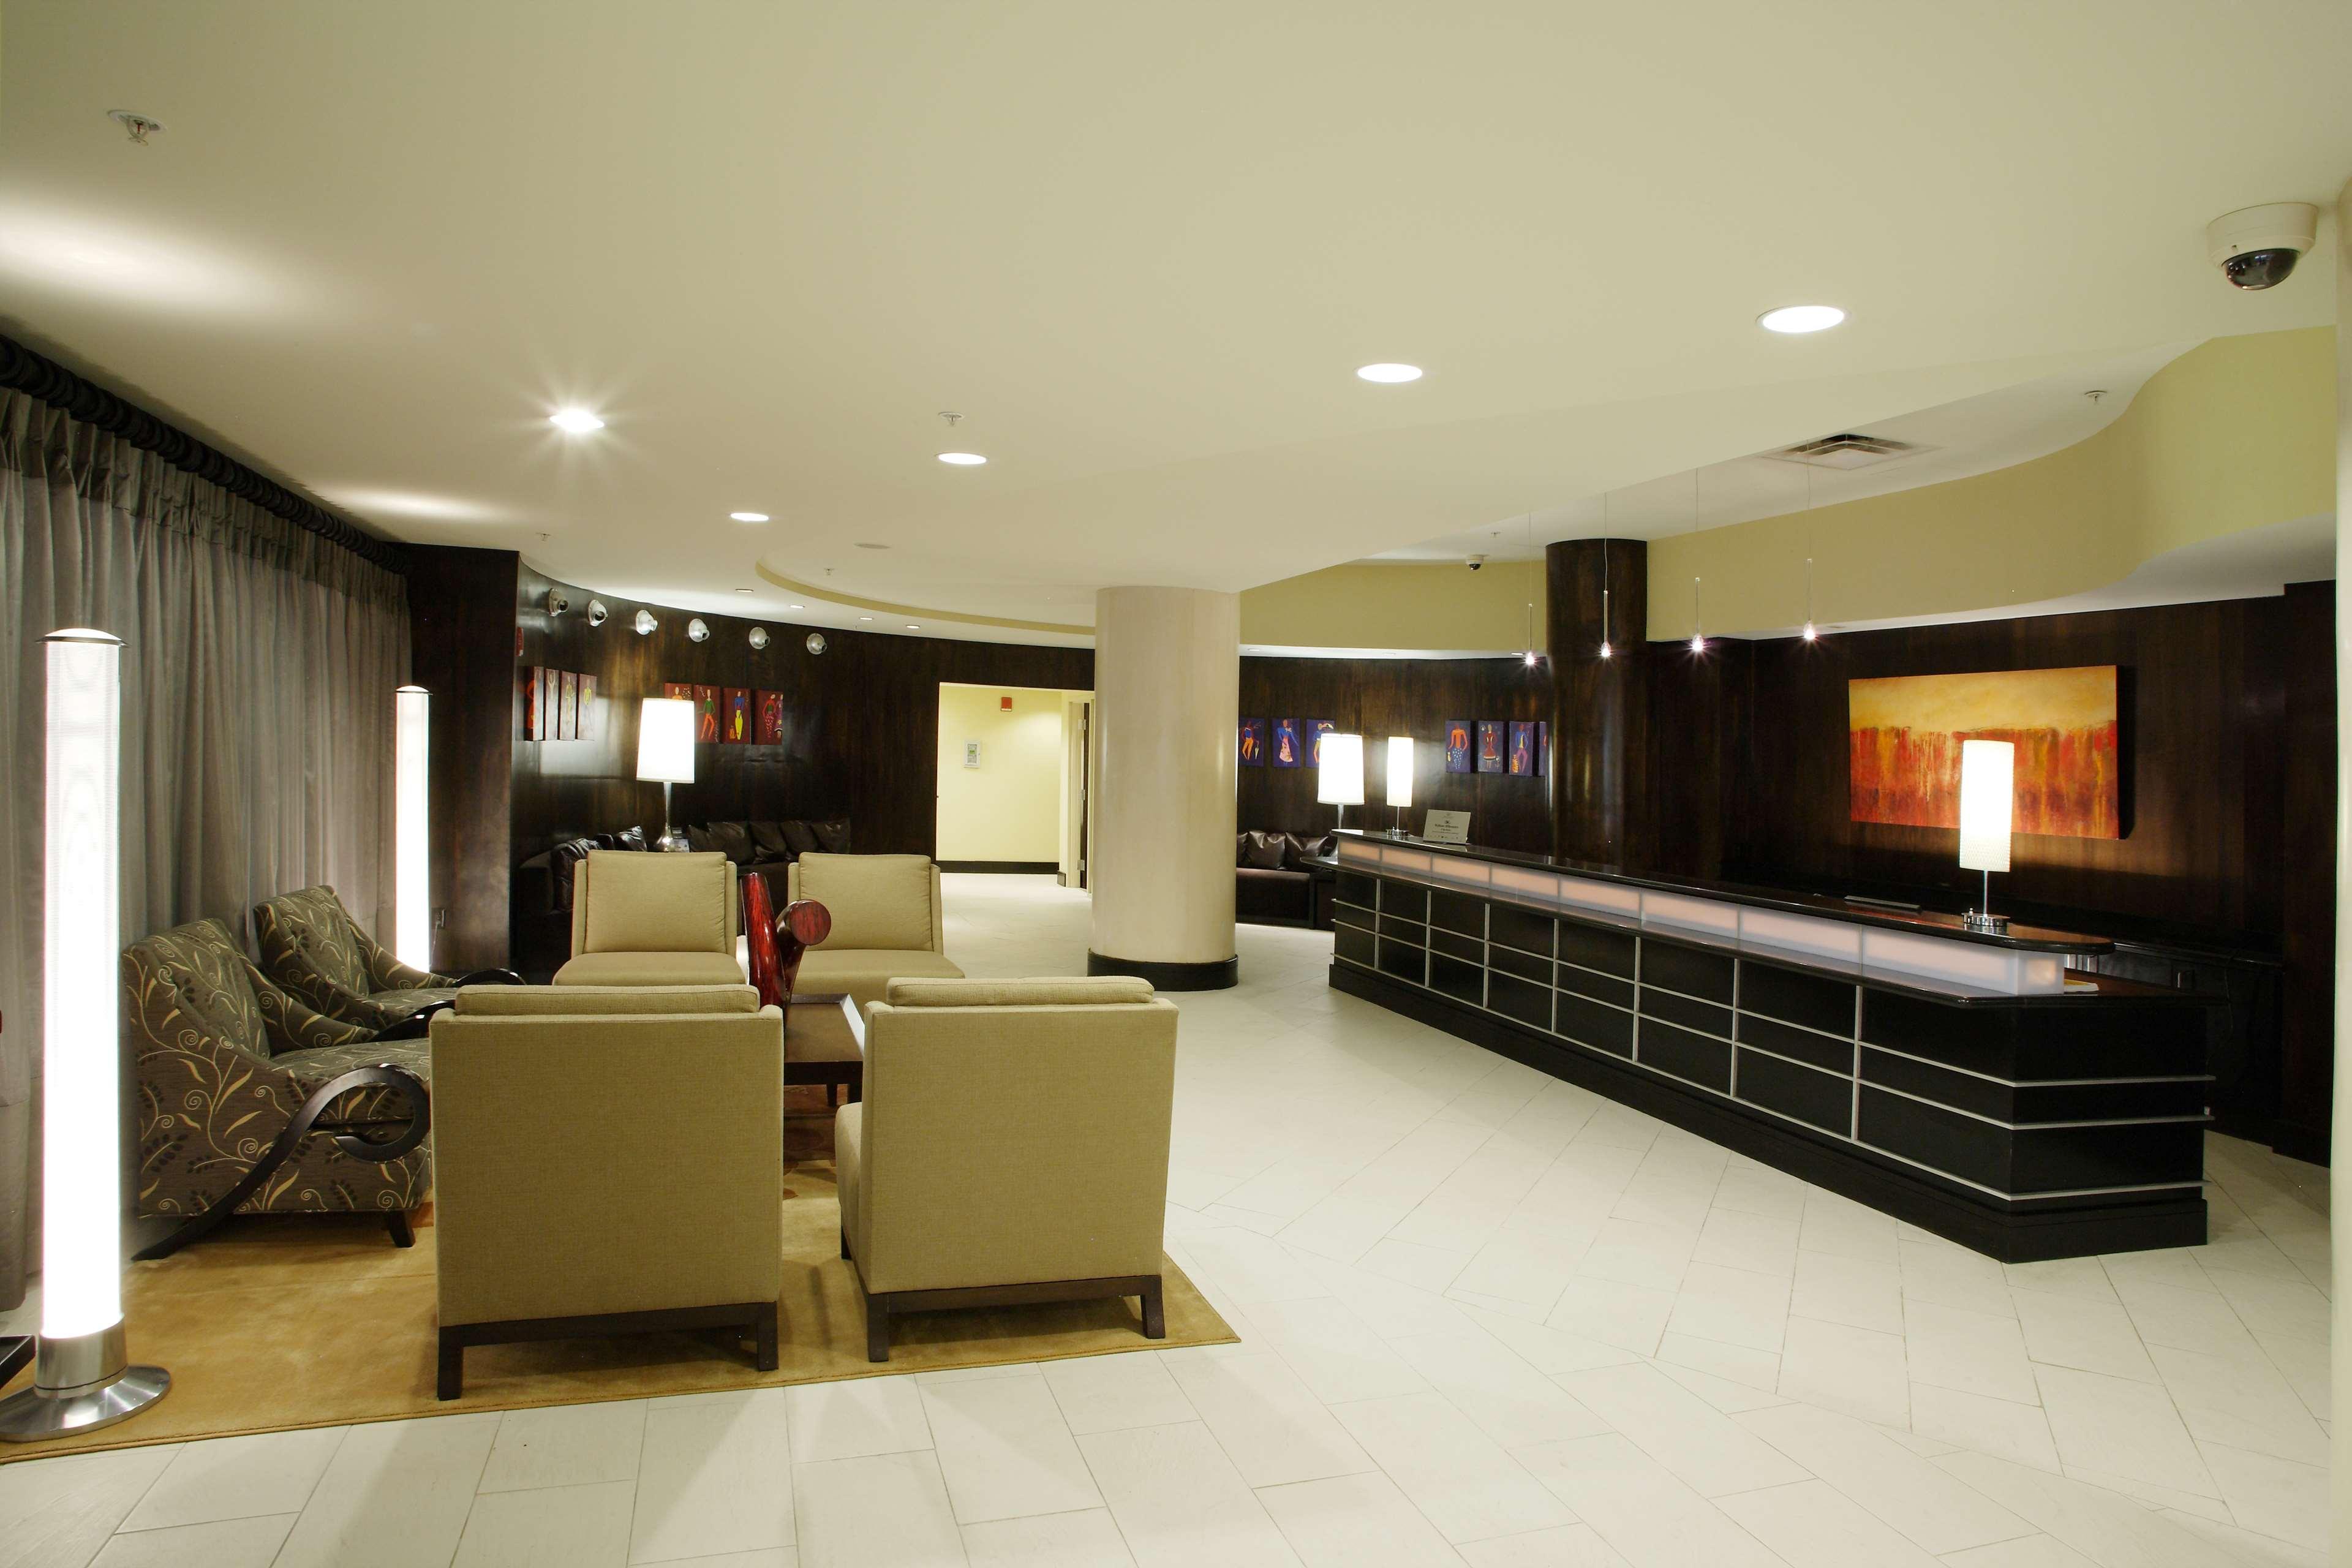 ดับเบิ้ลทรี เอล ปาโซดาวน์ทาวน์ซิตี้เซ็นเตอร์โฮเต็ล Hotel เอลปาโซ ภายใน รูปภาพ